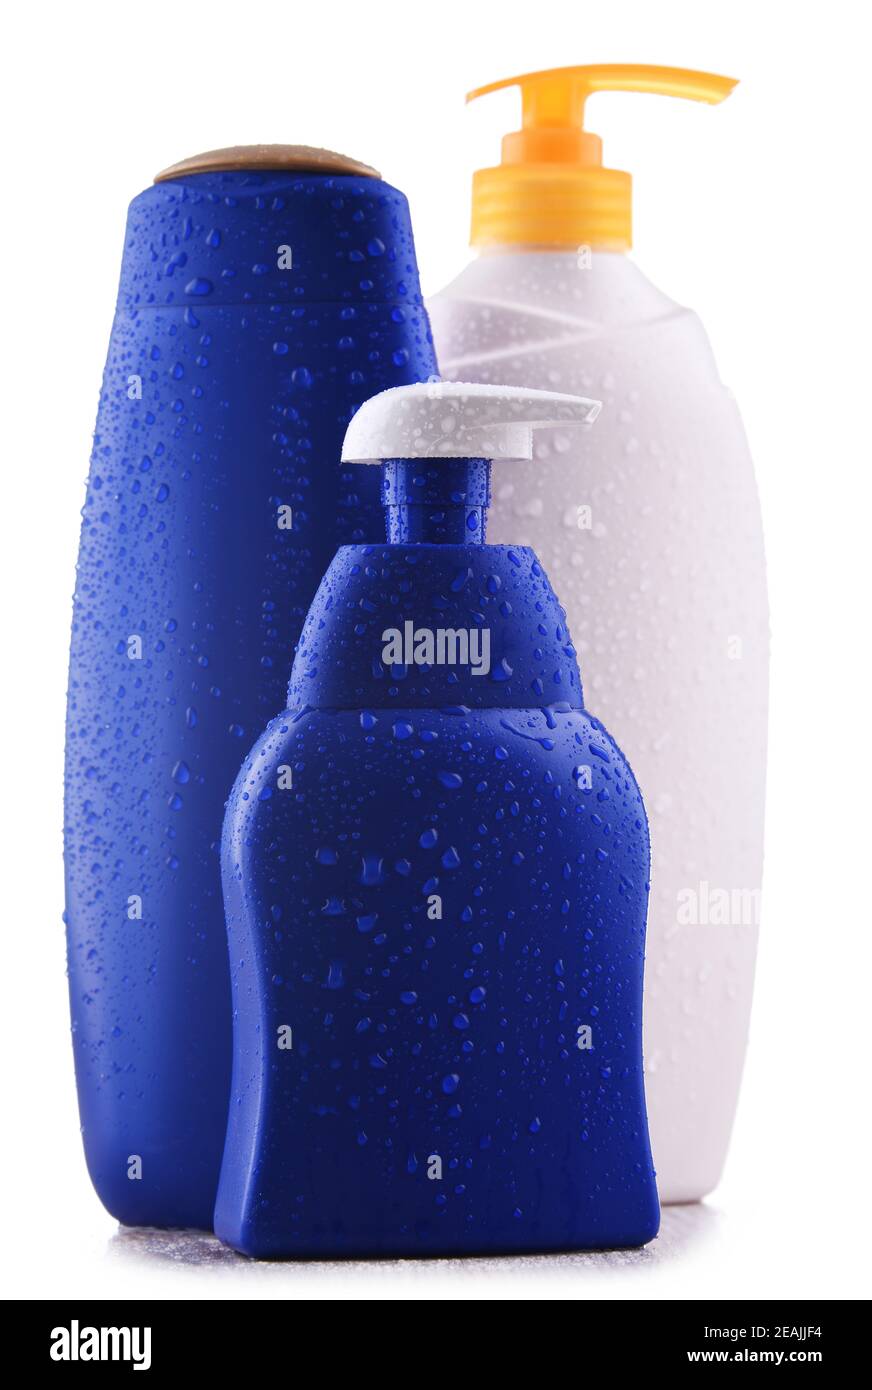 Des contaiers en plastique de shampoings et de gels douche isolés sur du blanc Banque D'Images